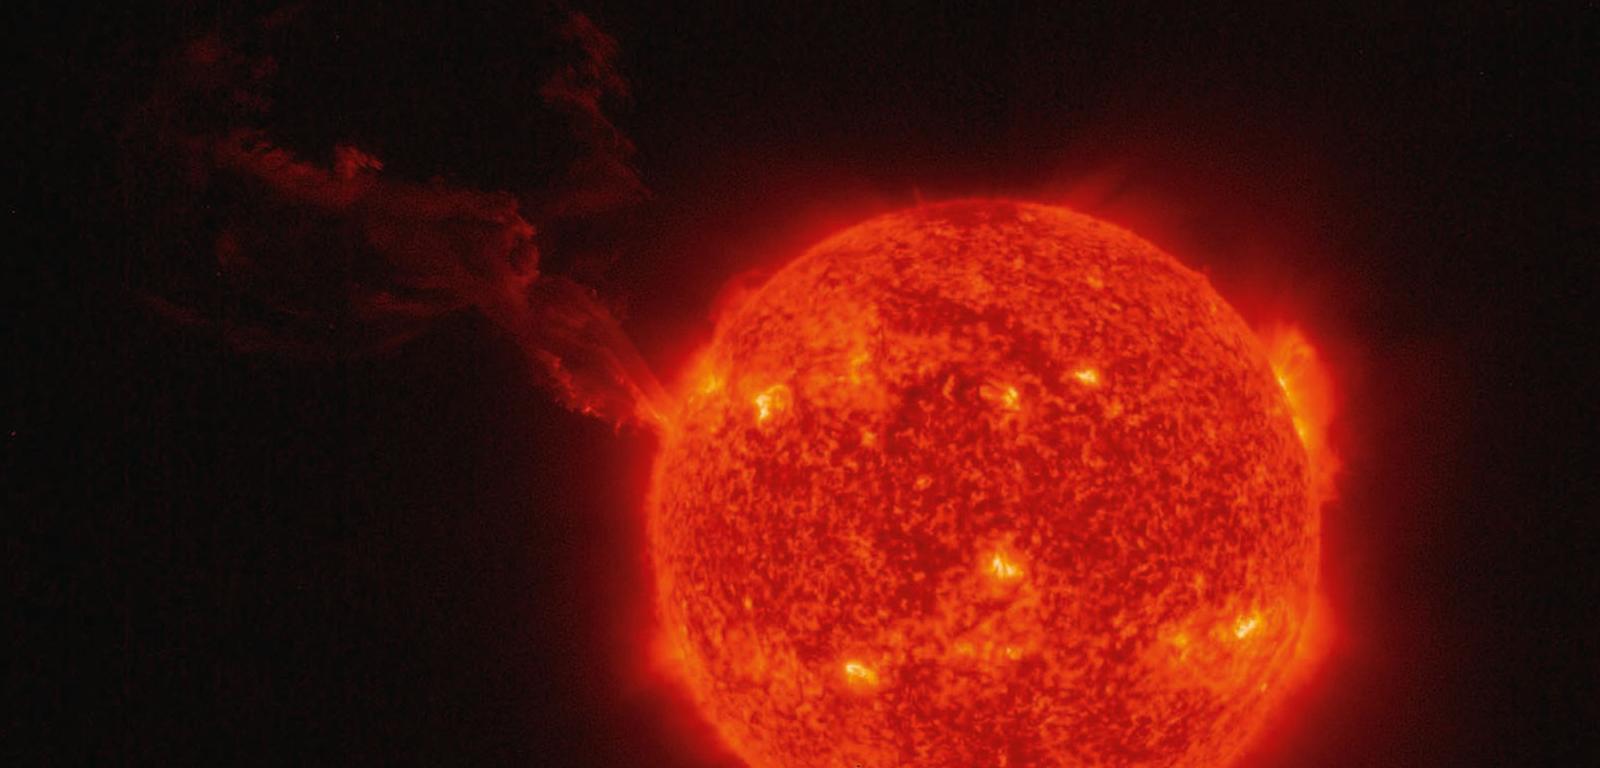 Zdjęcie Słońca wykonane przez Extereme Ultraviolet Imager sondy Solar Orbiter 15 lutego br. Widać protuberancje słoneczne, czyli potężne wyrzuty plazmy, przyjmujące zwykle postać pętli lub nawet arkad pętli sięgających daleko od powierzchni gwiazdy.